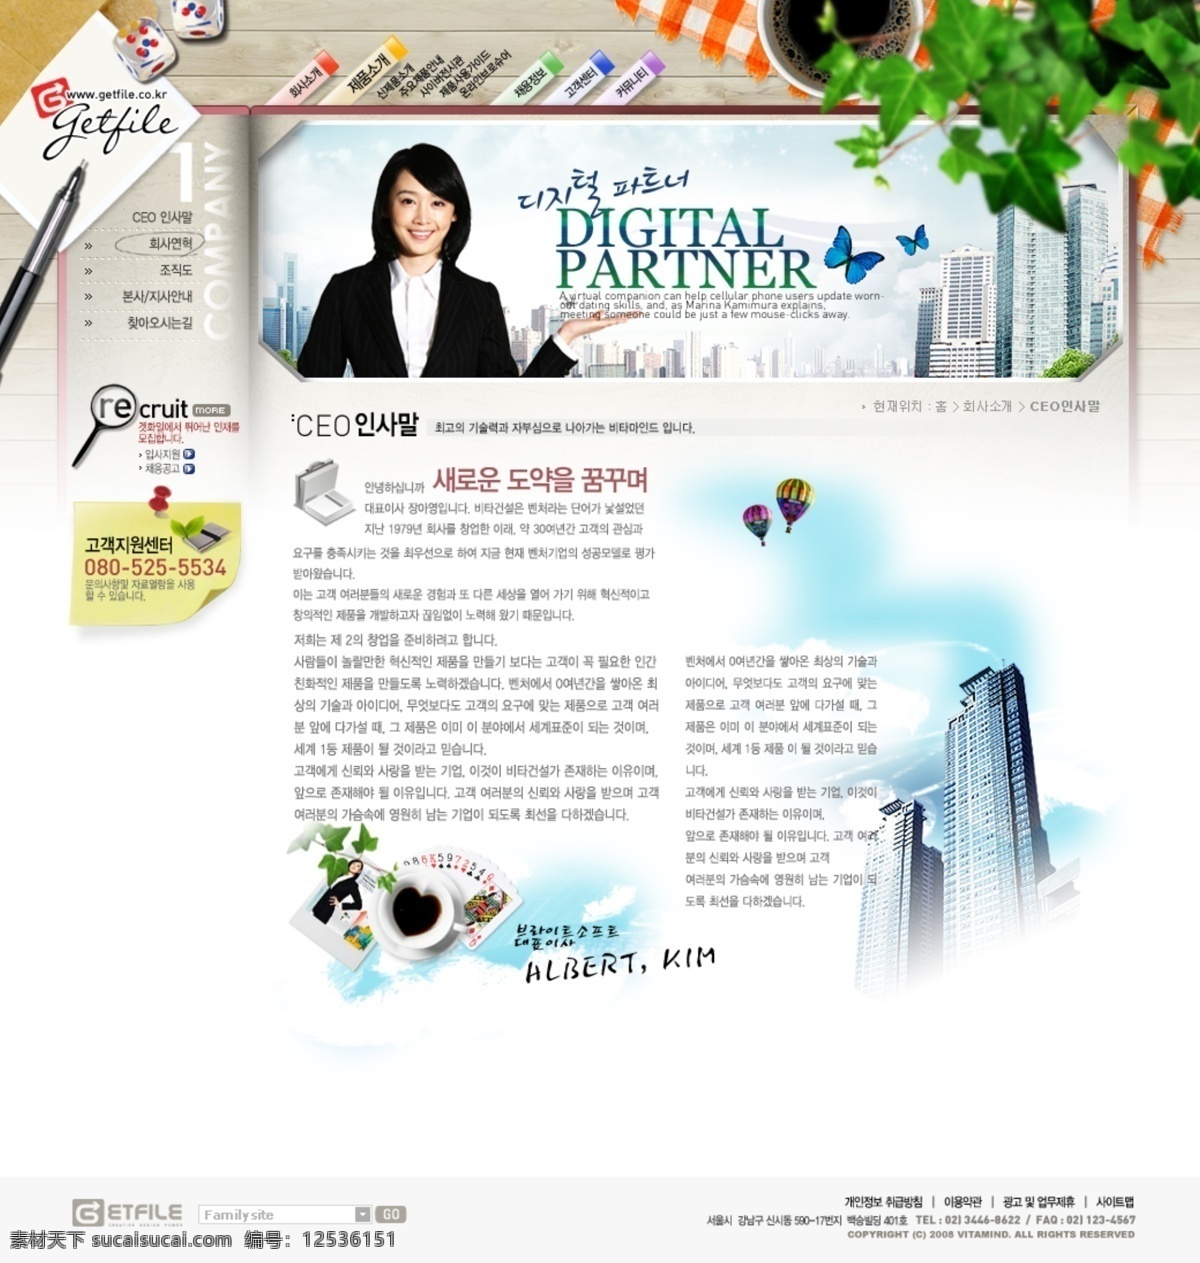 韩国模板 网页模板 网页设计 源文件 公司 网页 介绍 业务 商业 多用 模板下载 公司网页介绍 韩国 最新 模板 概括 情况 网页素材